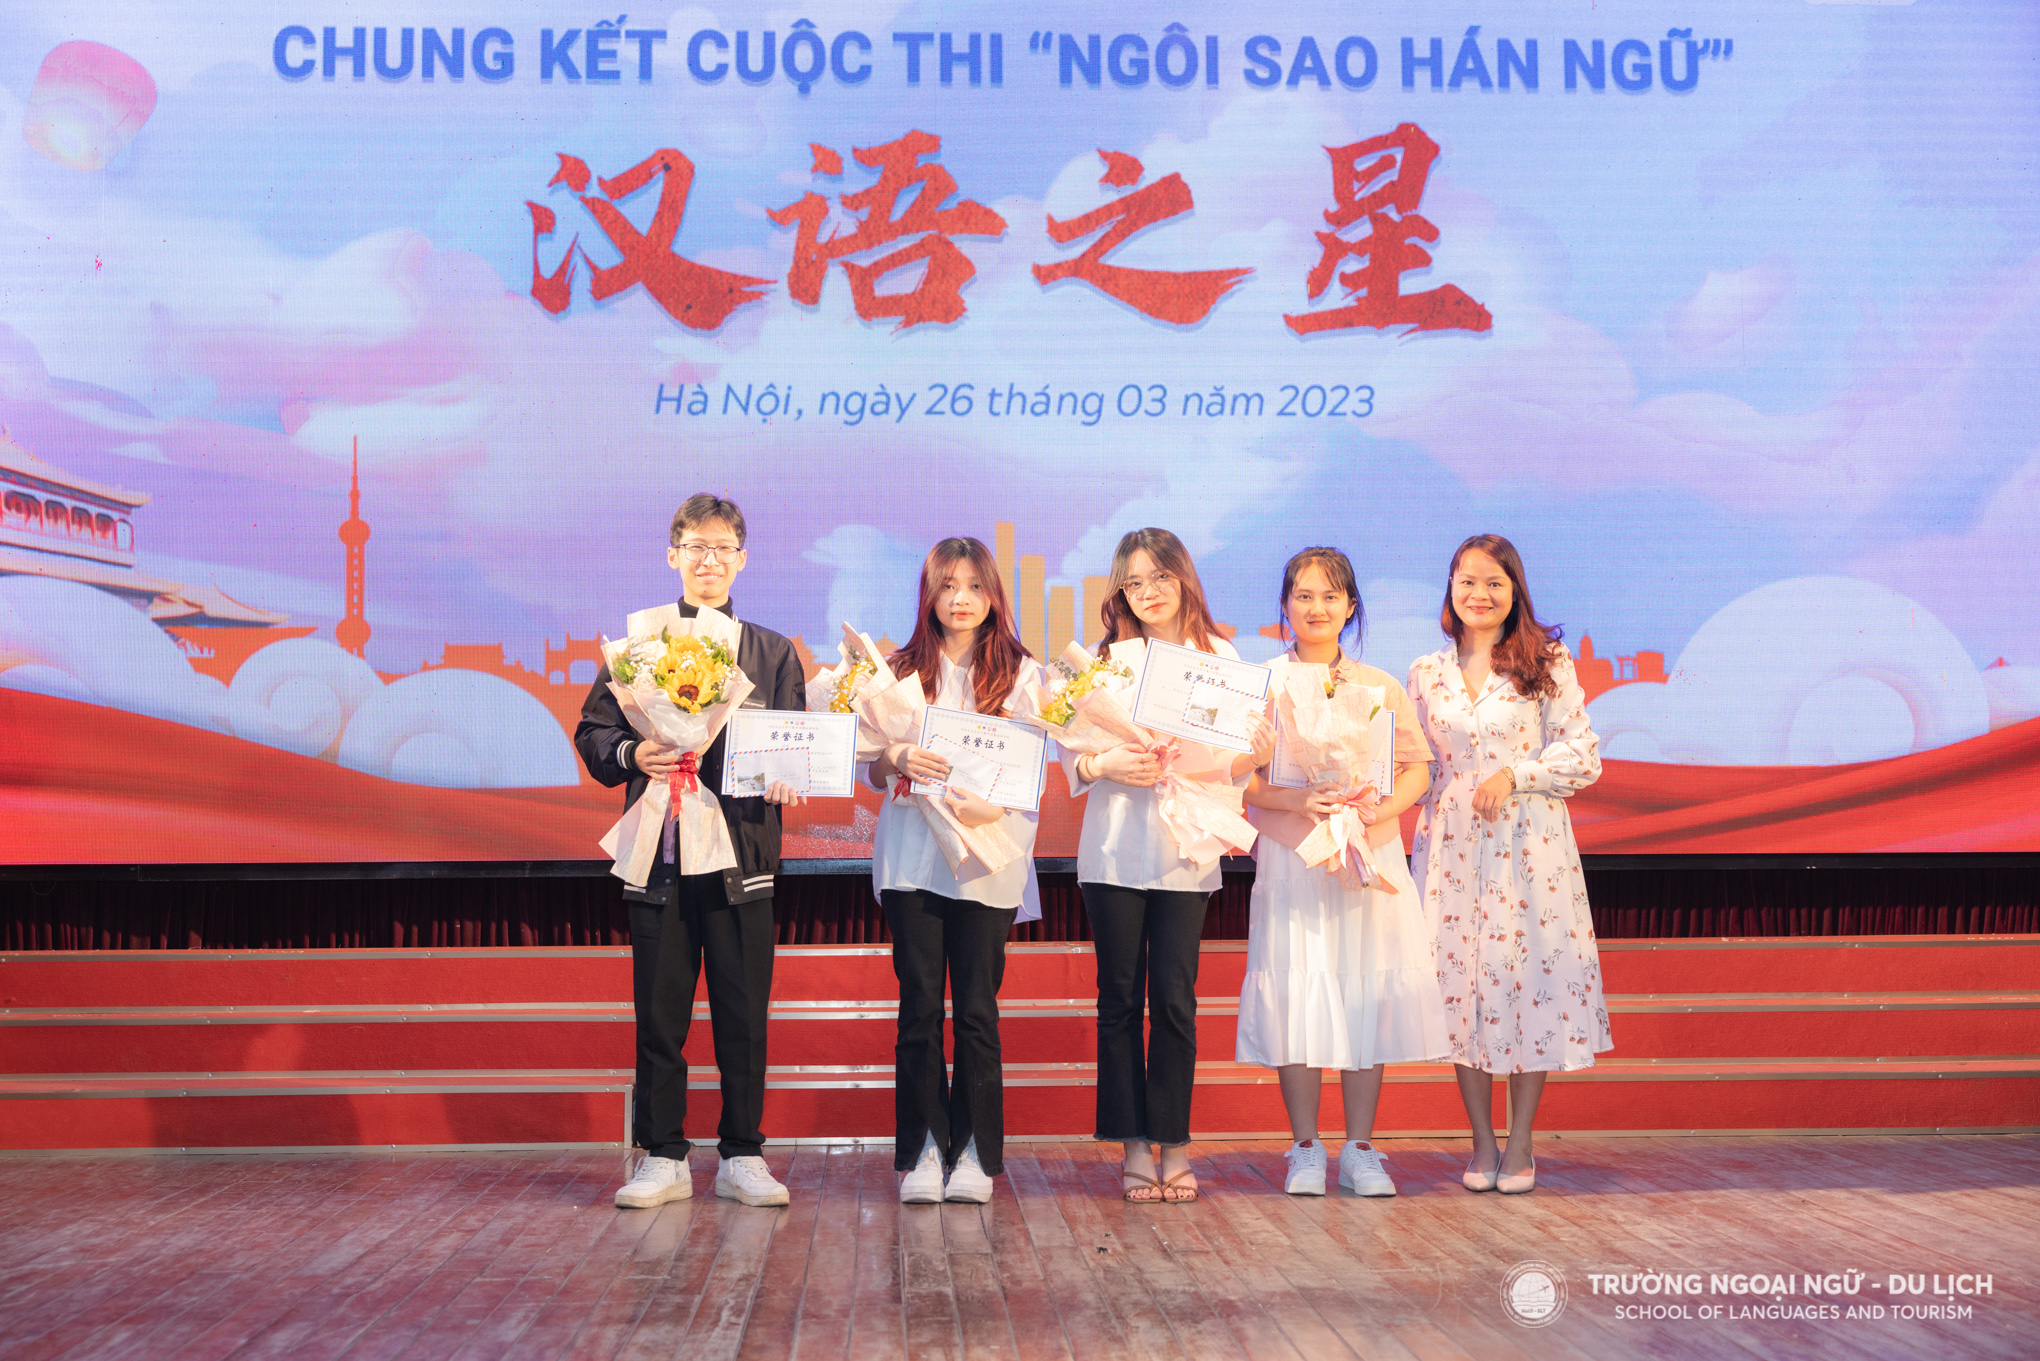 Chung kết Cuộc thi Ngôi sao Hán ngữ lần thứ 2 năm 2023